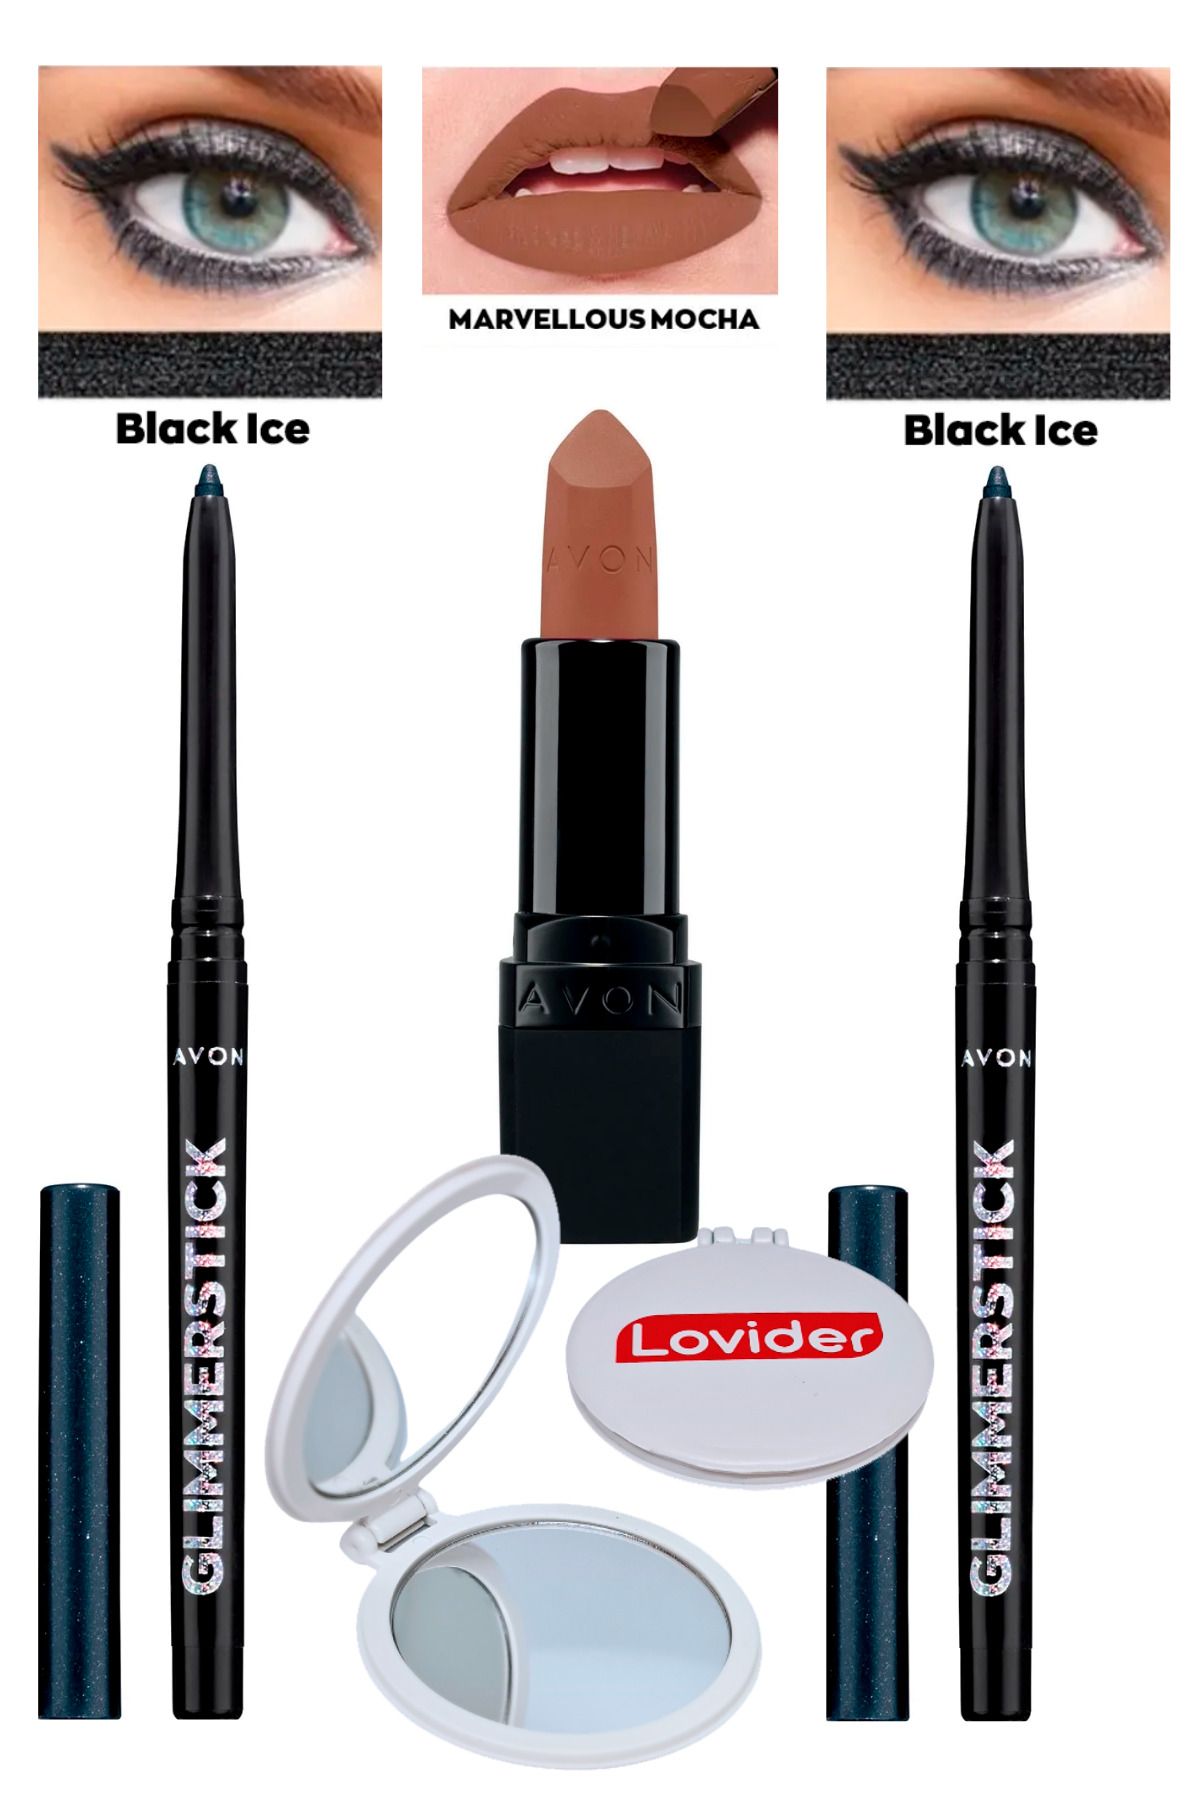 Avon Asansörlü Göz Kalemi Pırıltılı Siyah Black Ice 2'li + Mat Ruj Marvellous Mocha + Lovider Cep Aynası